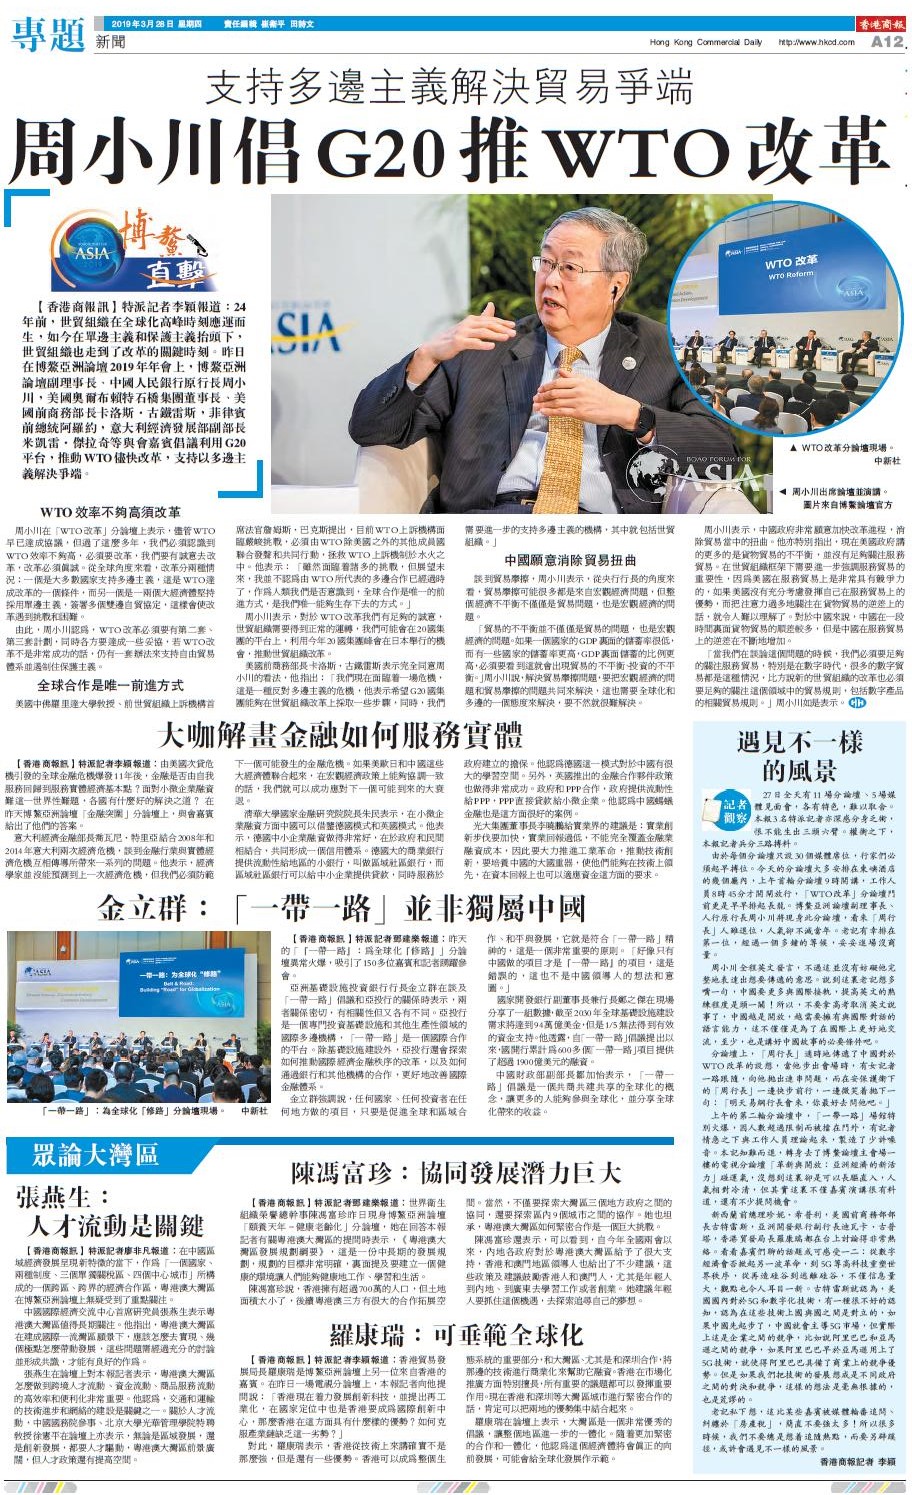 3月28日香港商报A12版